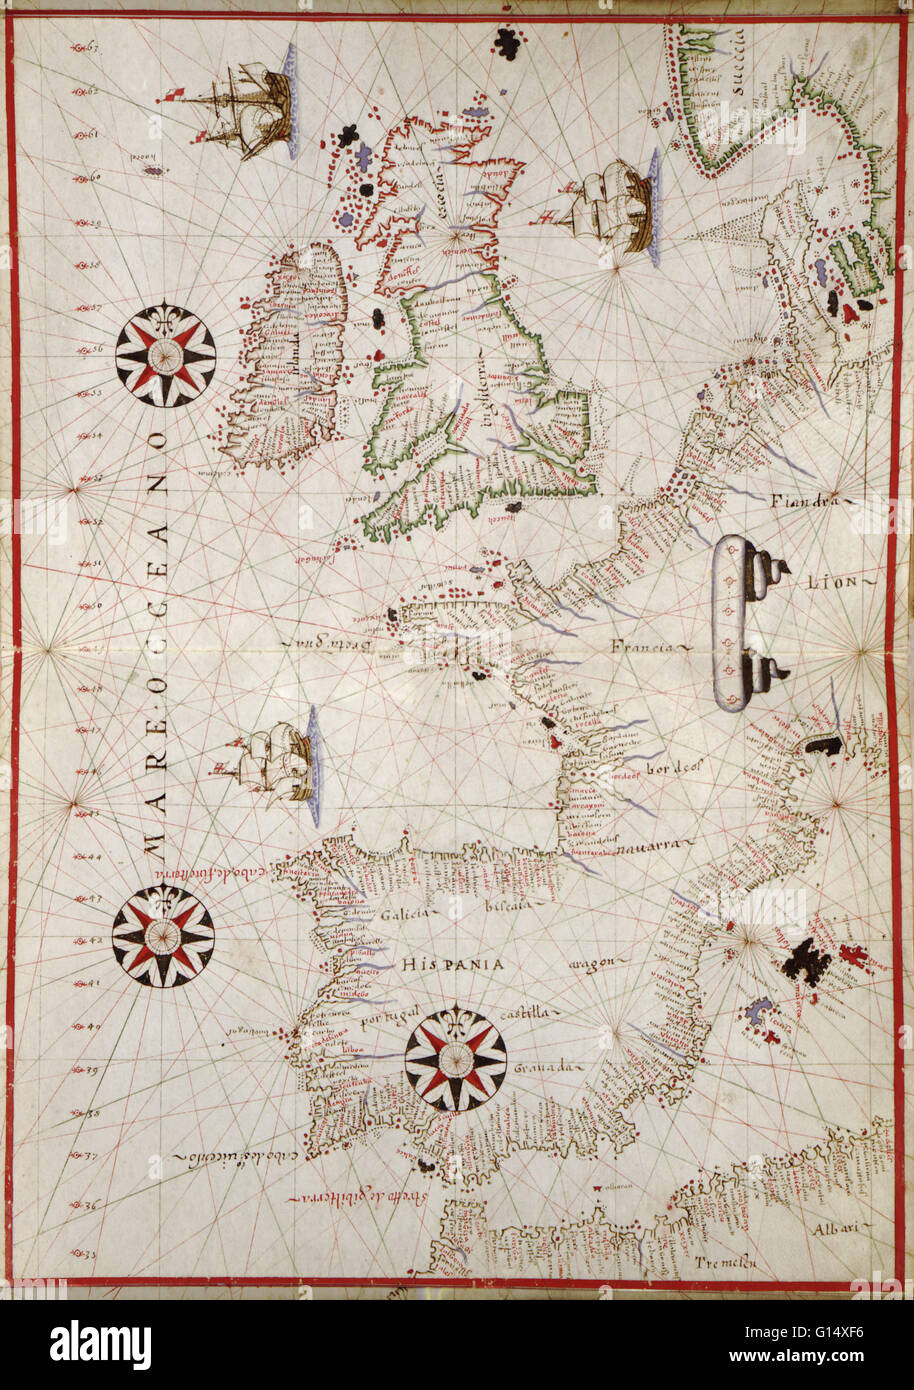 16e siècle plan de l'Europe de l'Ouest. Publié autour de 1590, cette carte montre les côtes de l'Europe de l'Ouest et de la Méditerranée, et fait partie d'un atlas portolan (une collection de cartes de navigation) par le cartographe Joan Oliva, qui fut actif de 1580 Banque D'Images